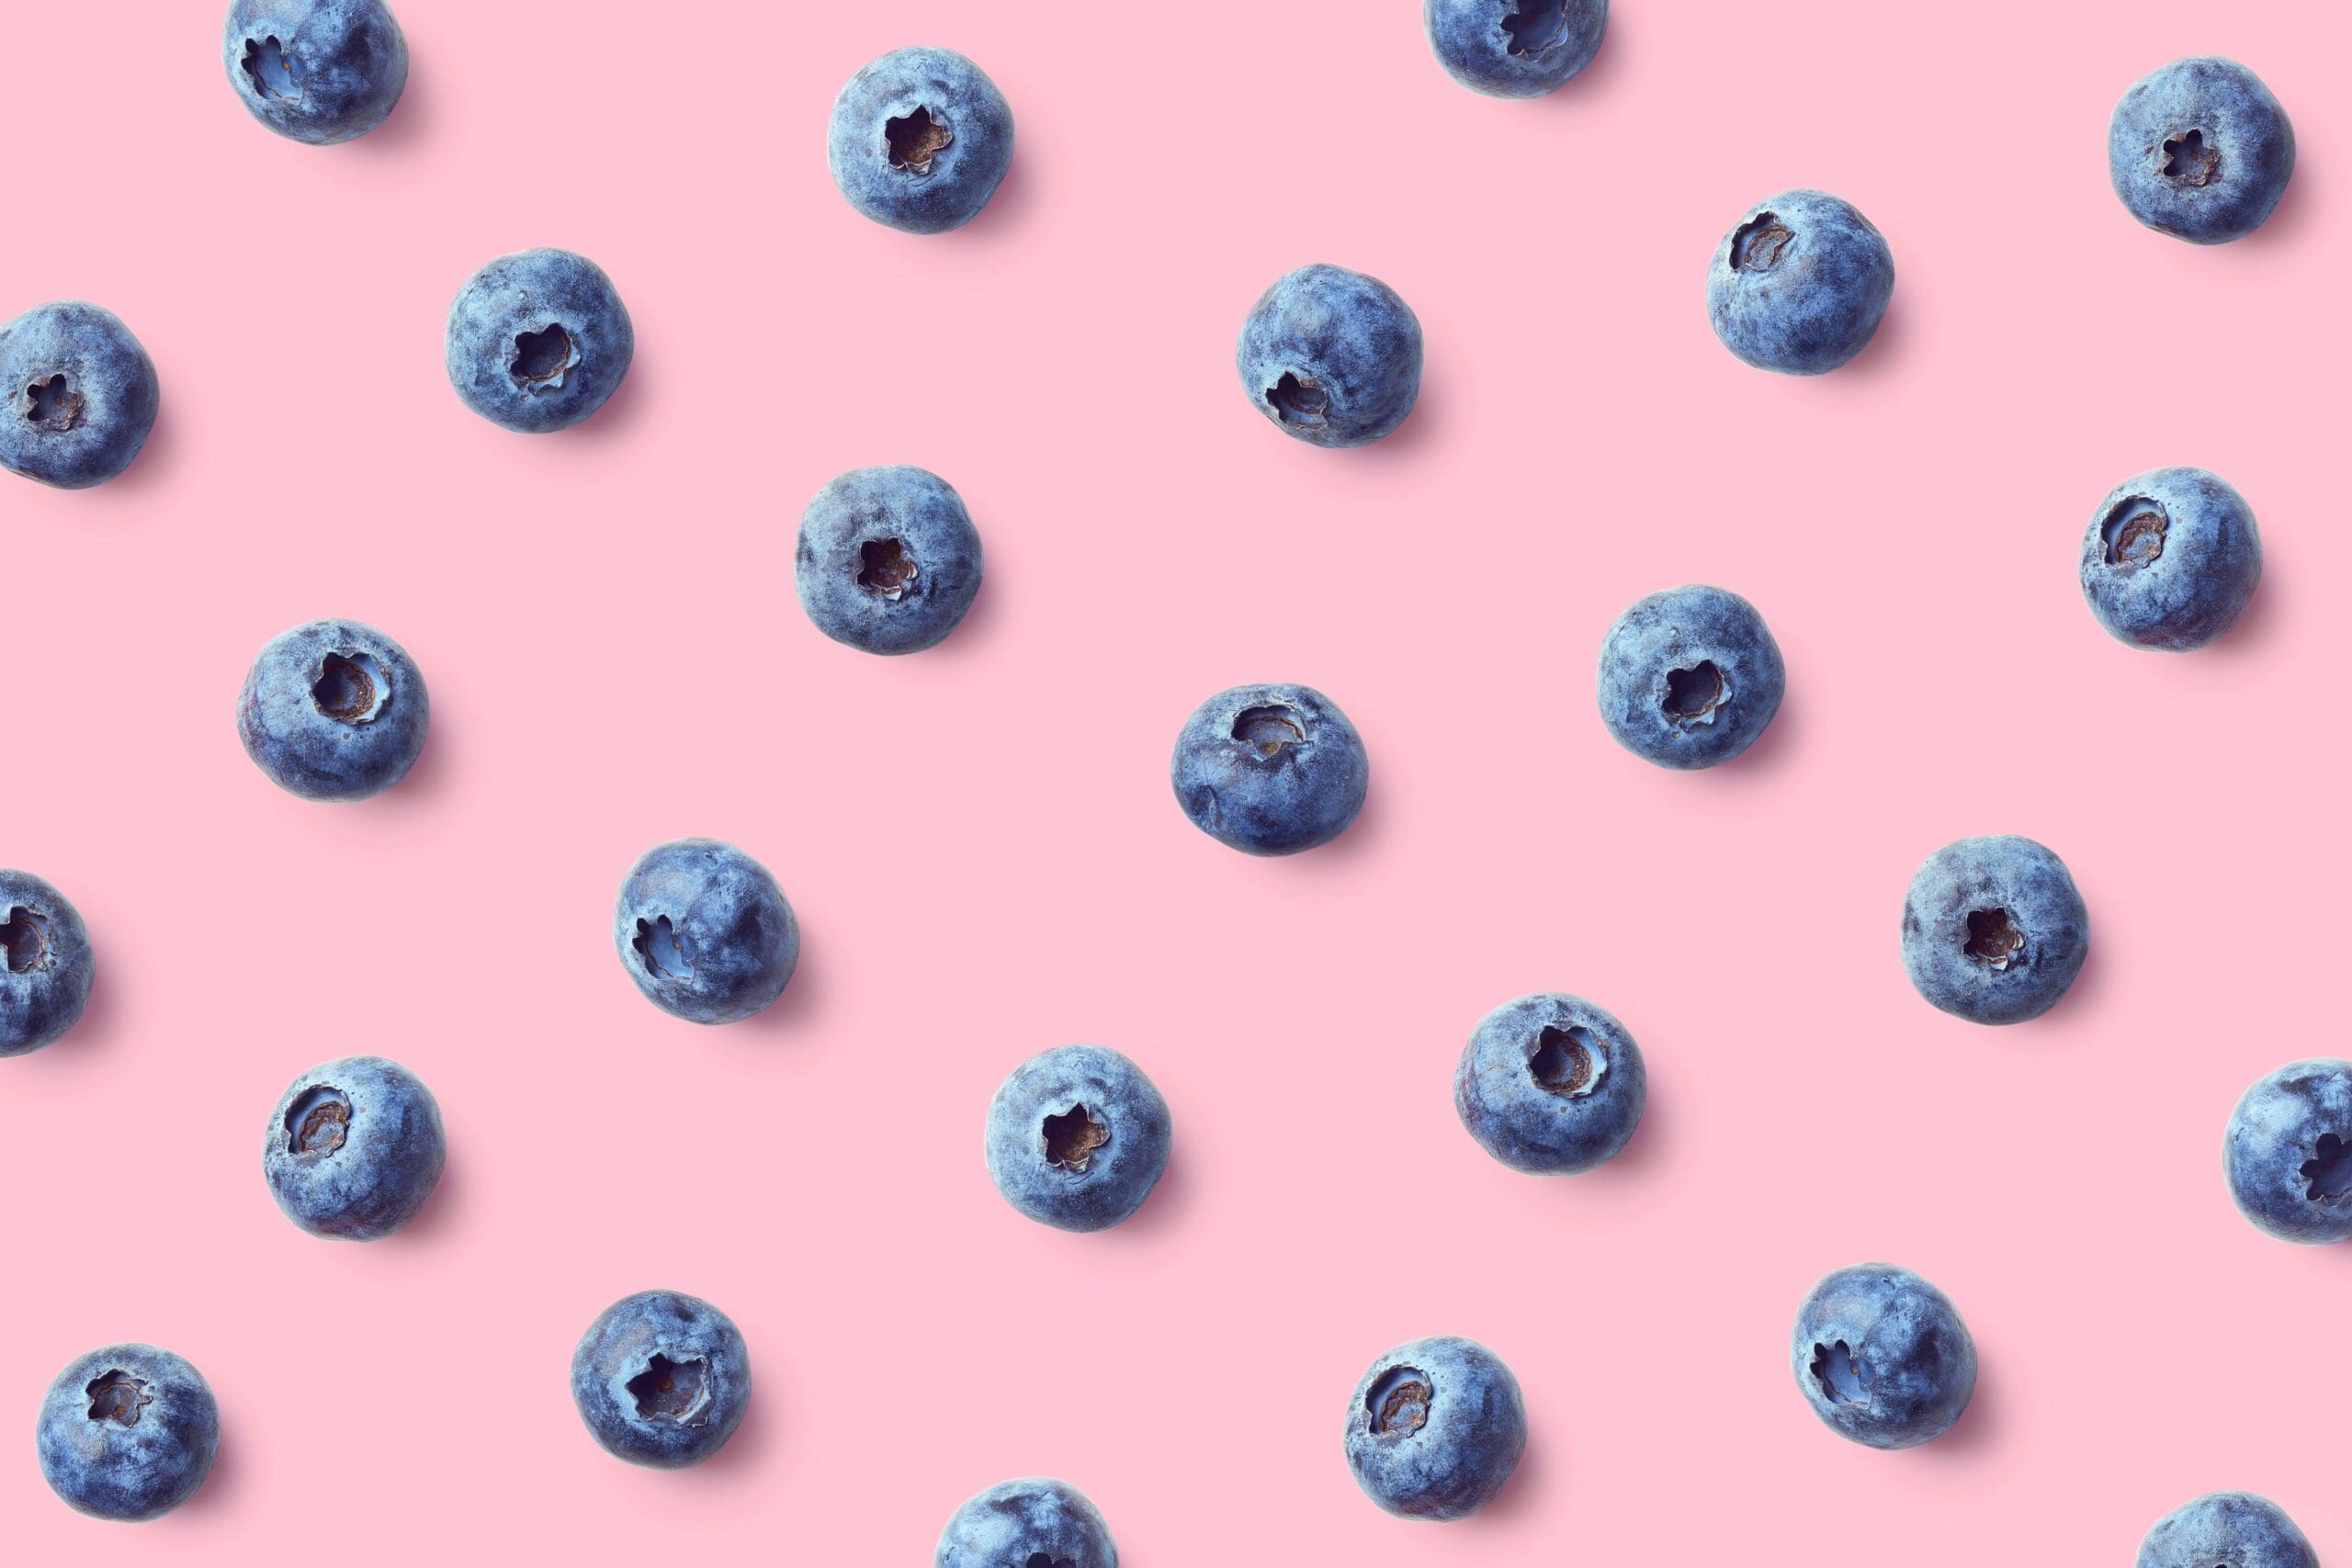 Blueberries good for heart health